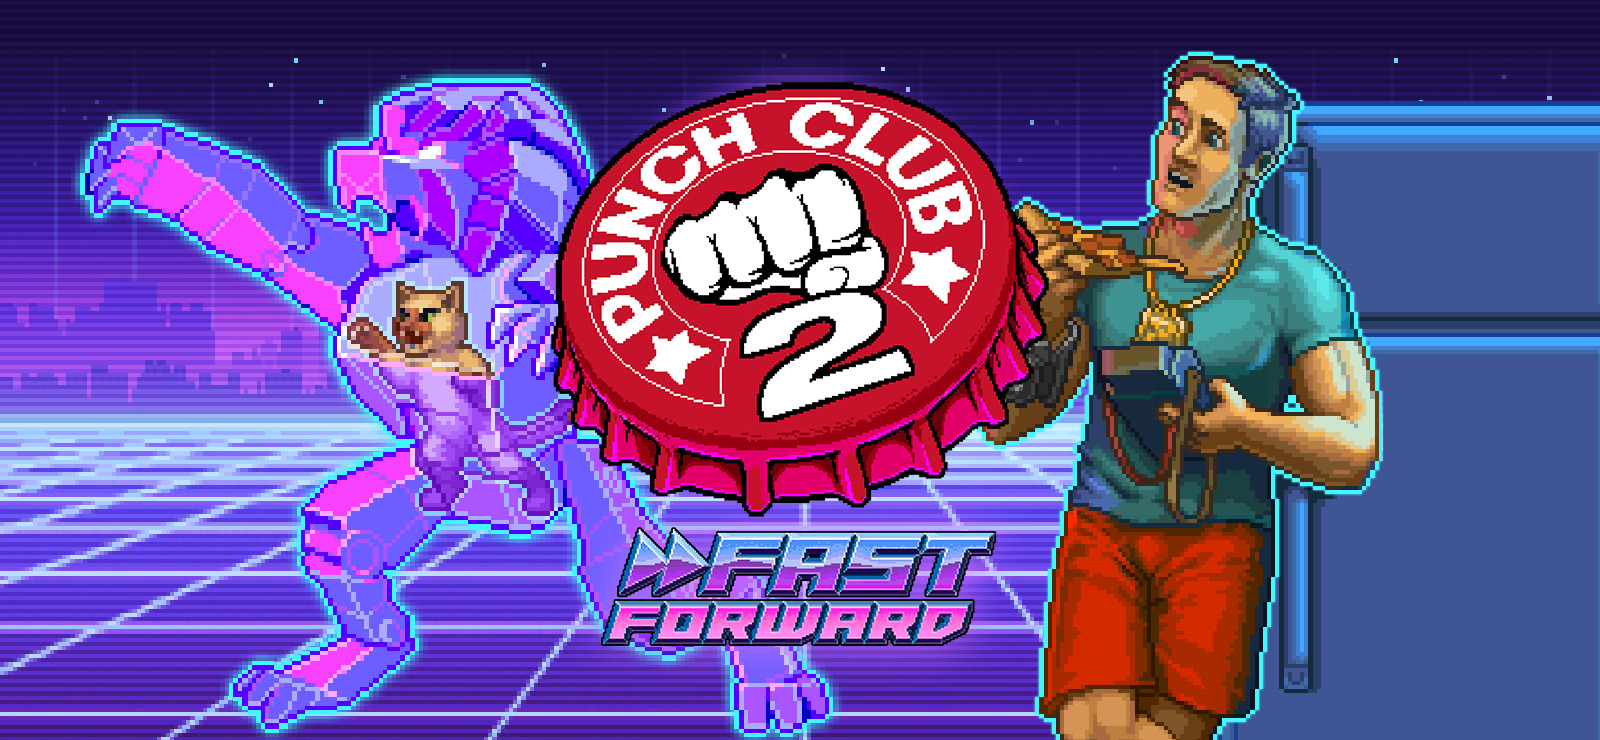 Punch Club 2: Fast Forward on